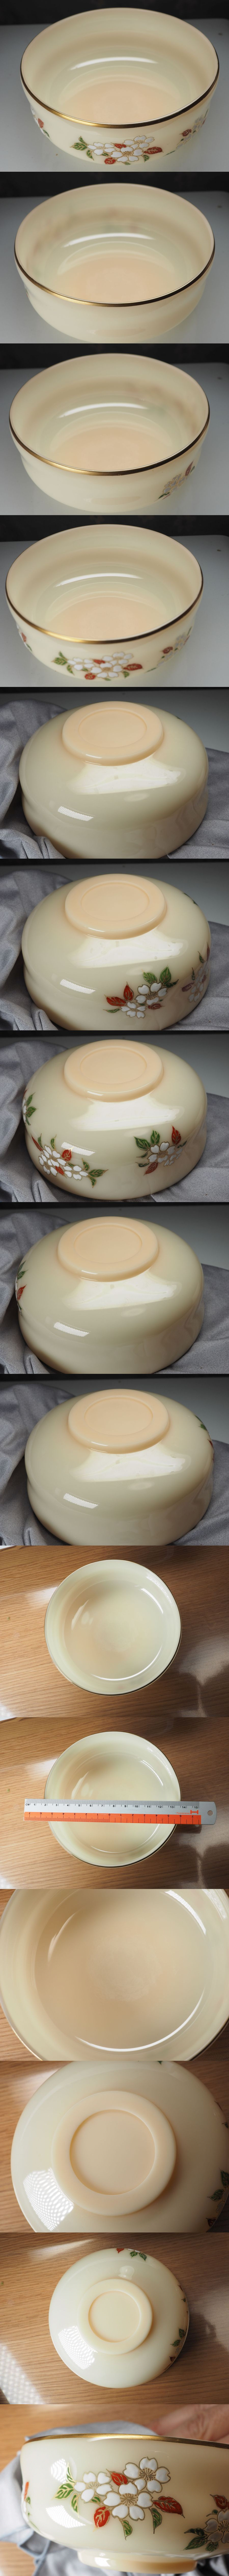 本物保証京セラ『玉磁』 稲盛 宝玉で作られた茶碗 人造サファイア・ルビーと同等の物質 宋